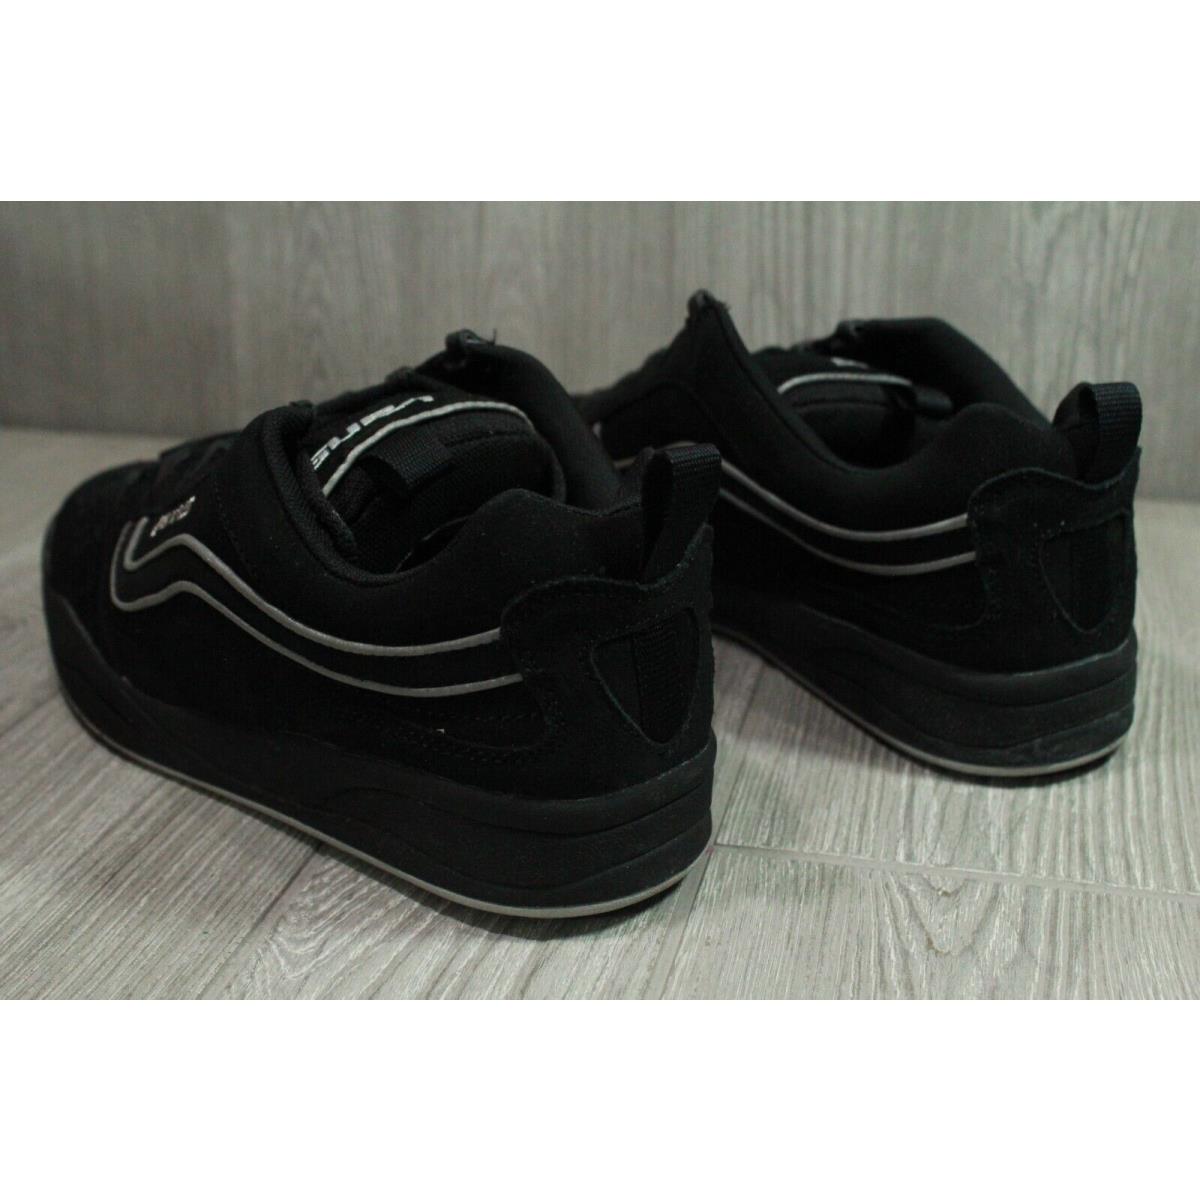 Vintage Vans Floyd Skate Shoes Black 2004 Mens Size 10.5 11 12 Oss, - Vans  shoes - Black